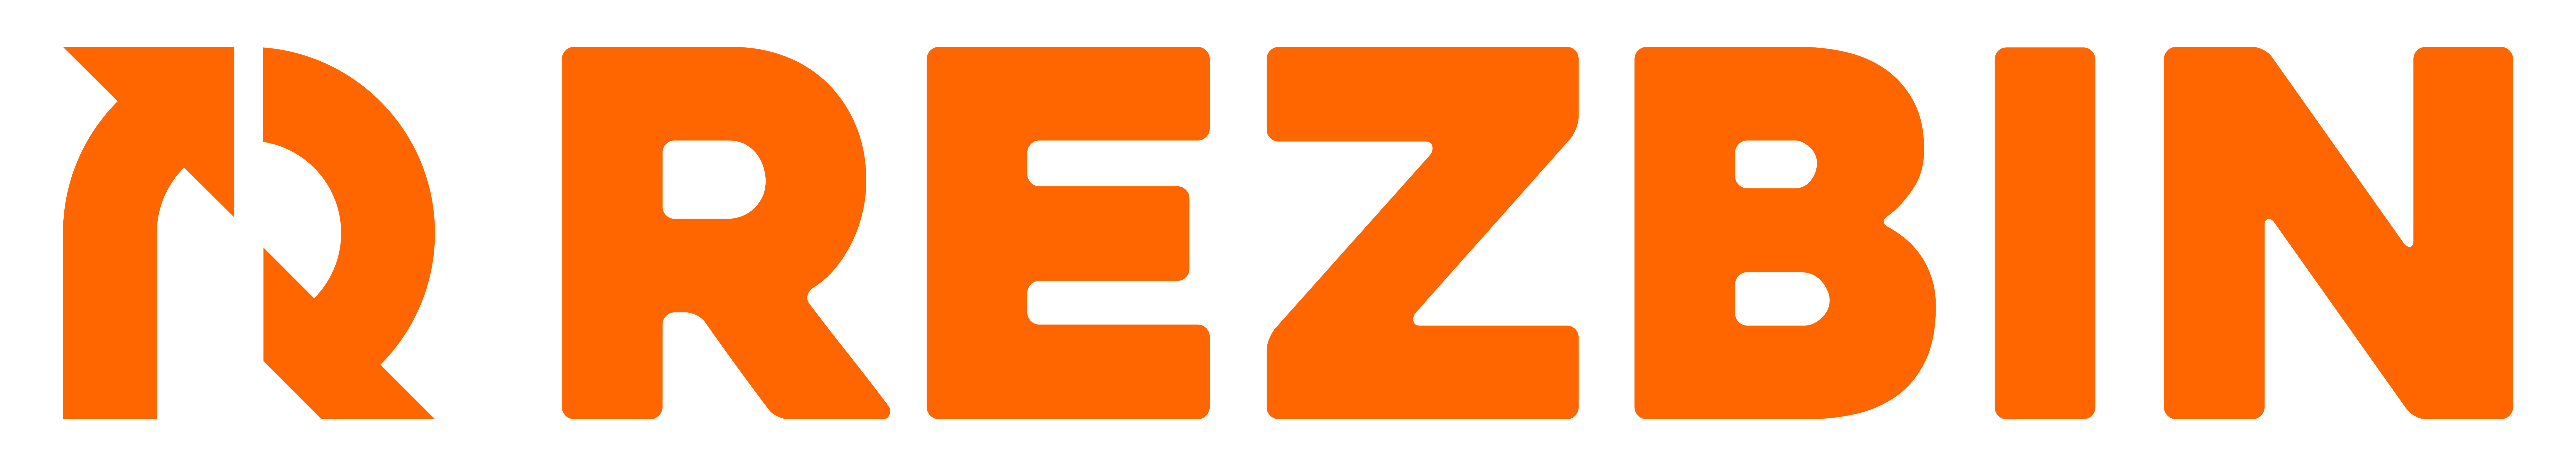 Client logo 1 (1)